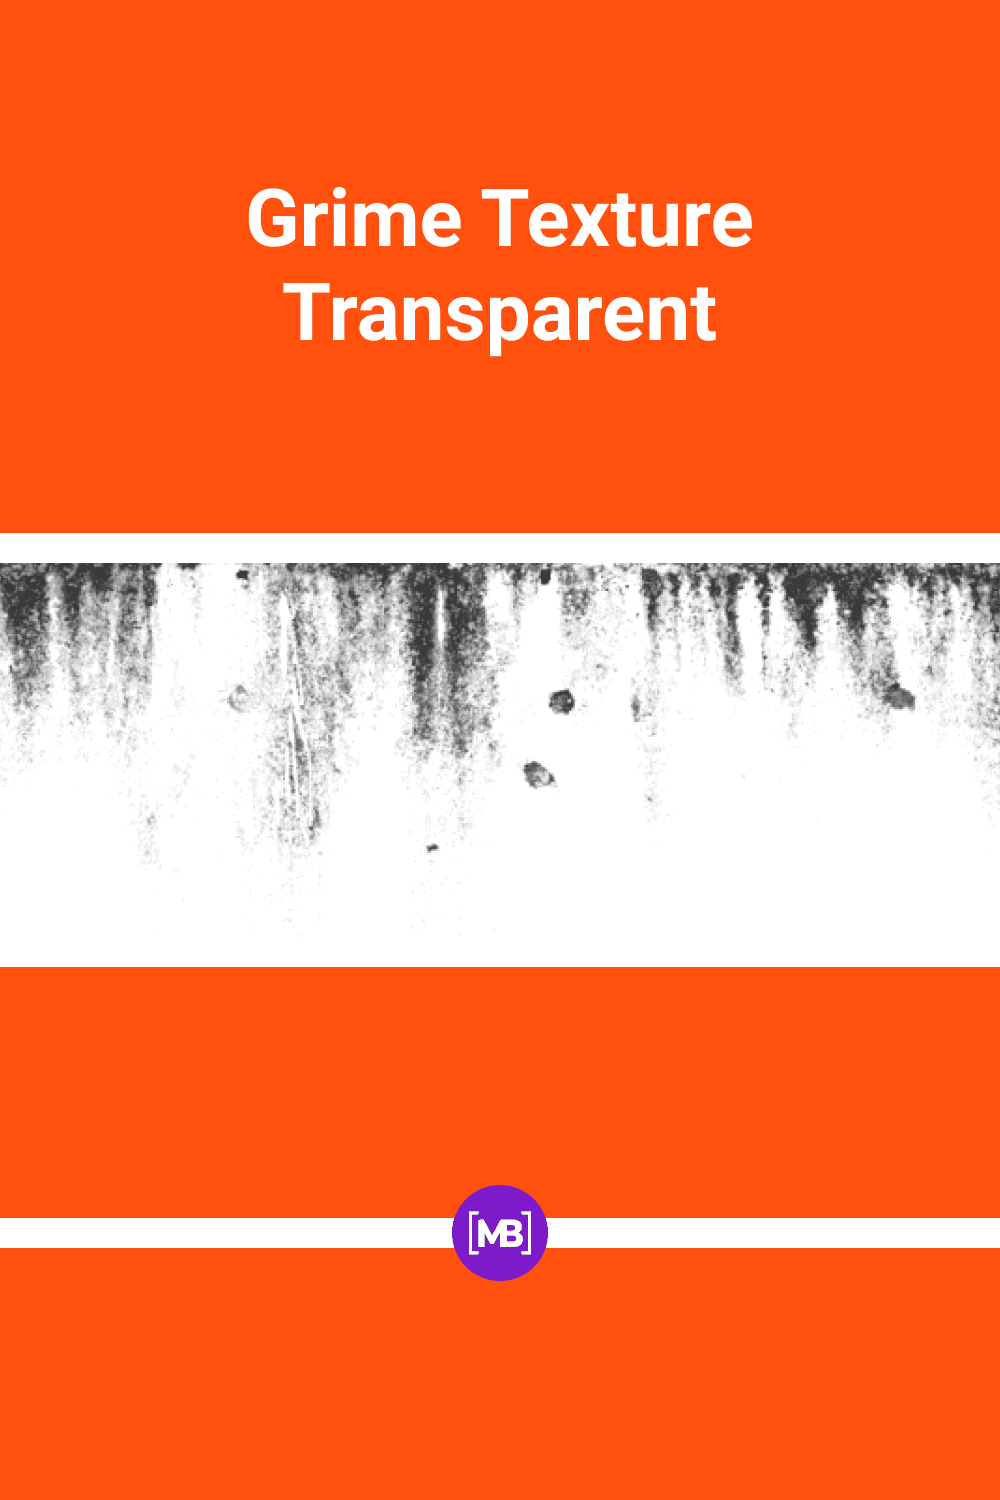 Grime texture transparent